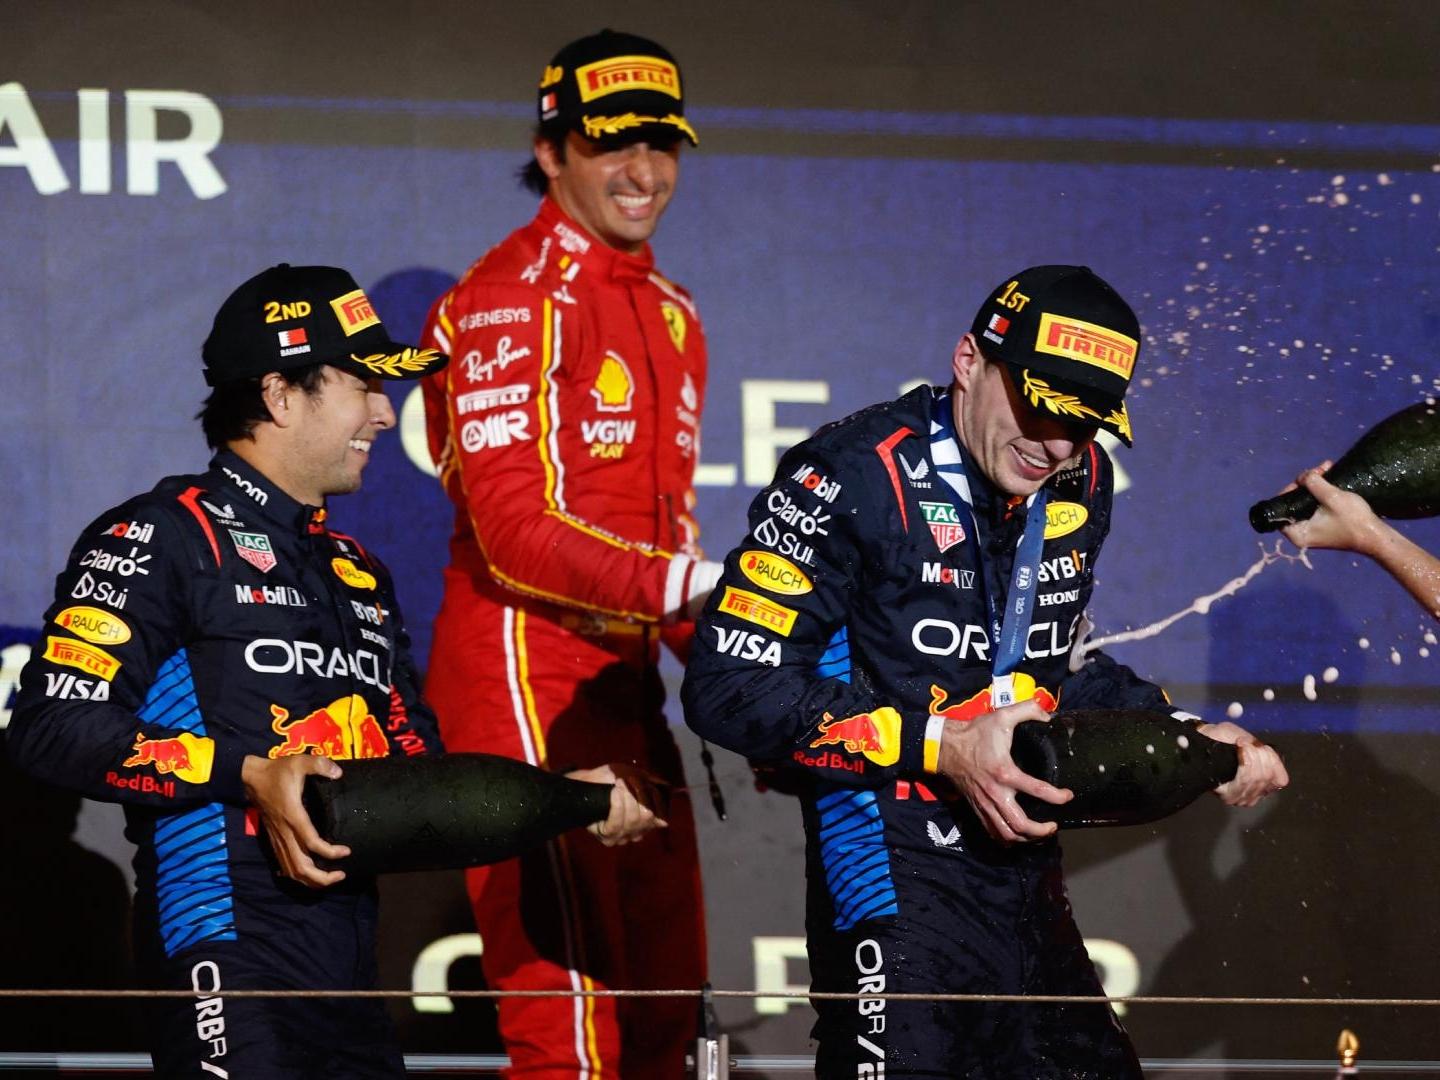 ¡'Checo' Pérez Sube al Podio! Queda Segundo en el GP de la F1 de Bahrein; Verstappen Gana